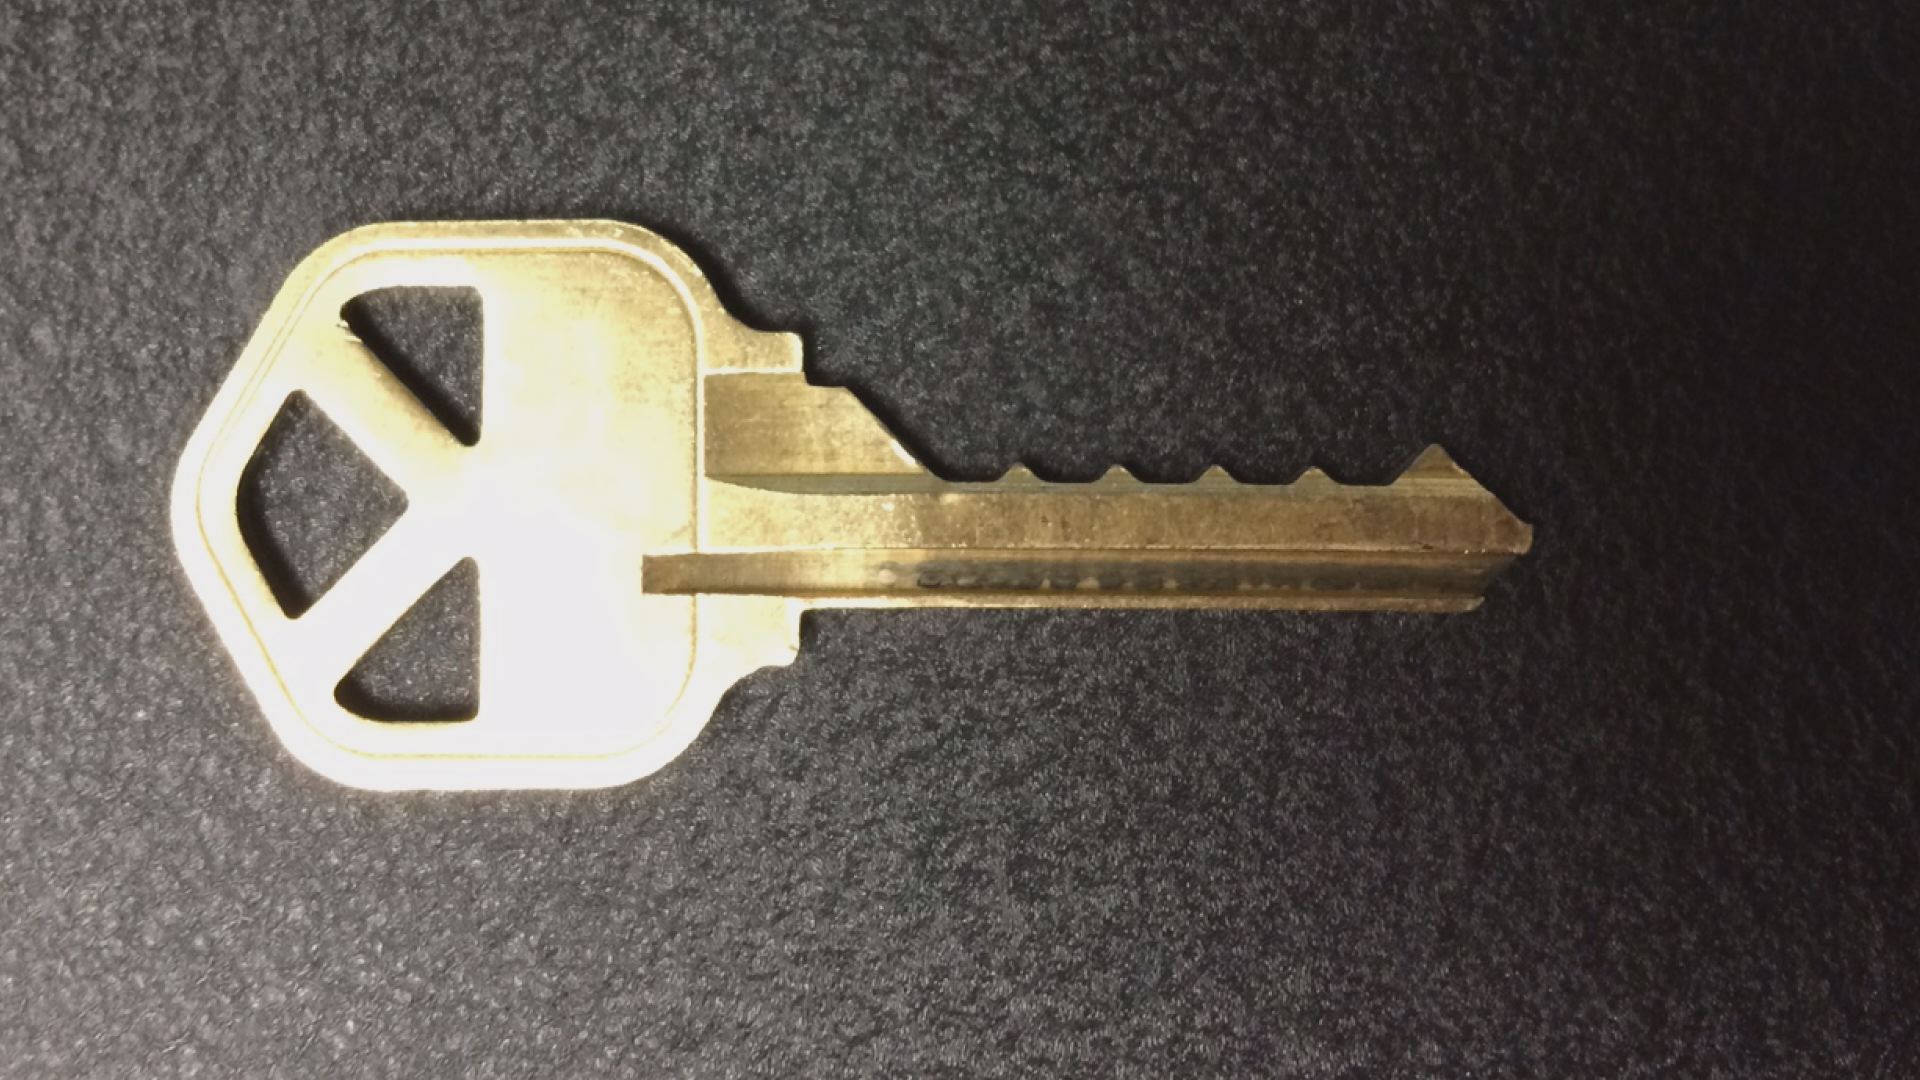 2 Test: Do Bump Keys Unlock Almost Any Deadbolt?